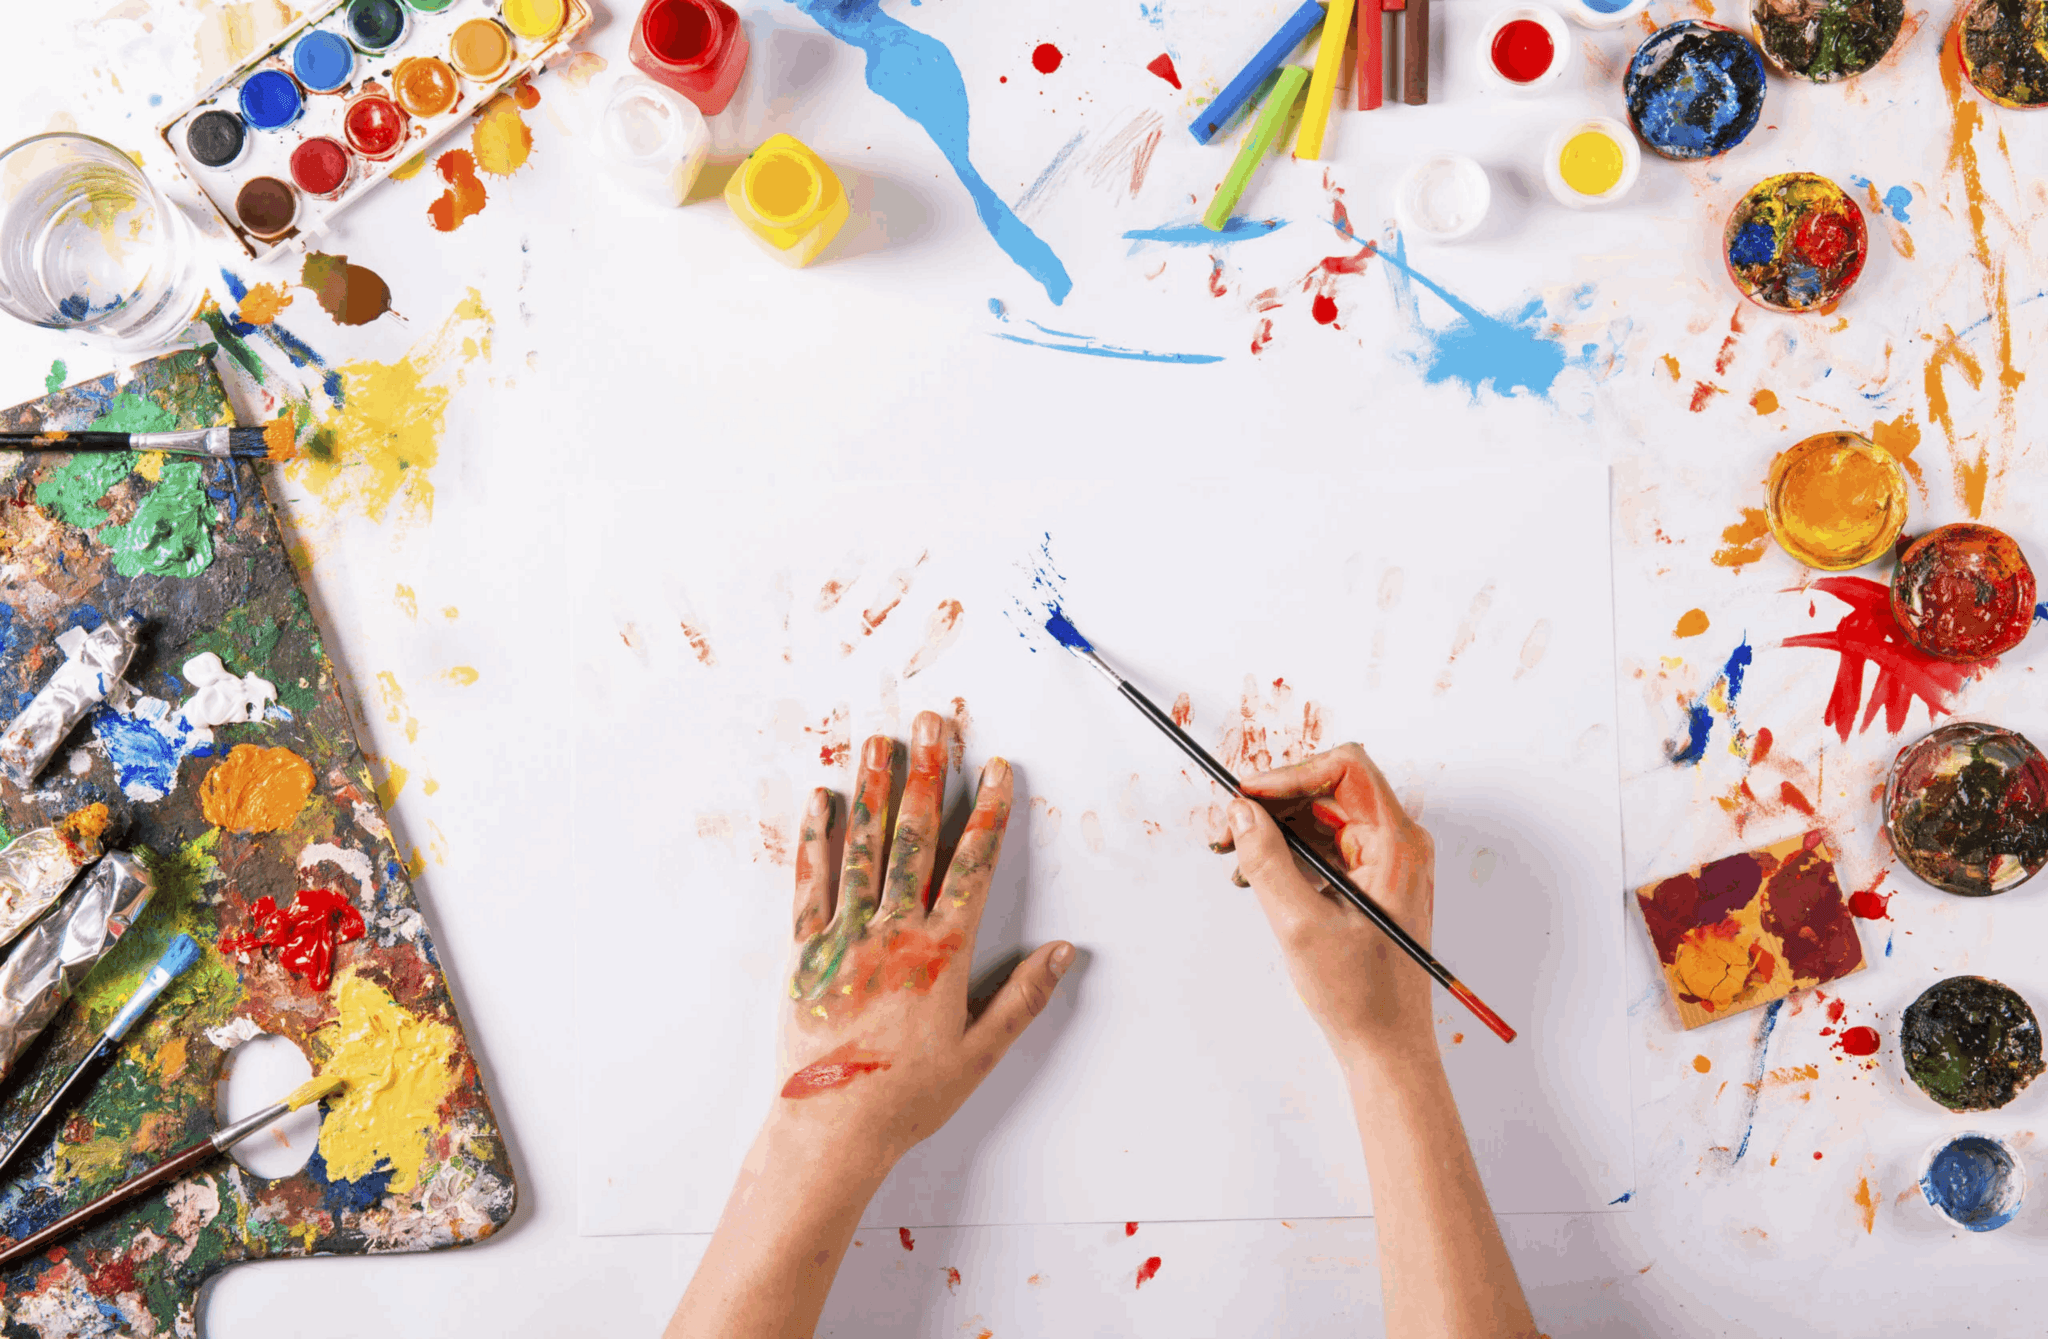 Уроки рисования красками для начинающих: бесплатные видео для домашнего обучения - все курсы онлайн